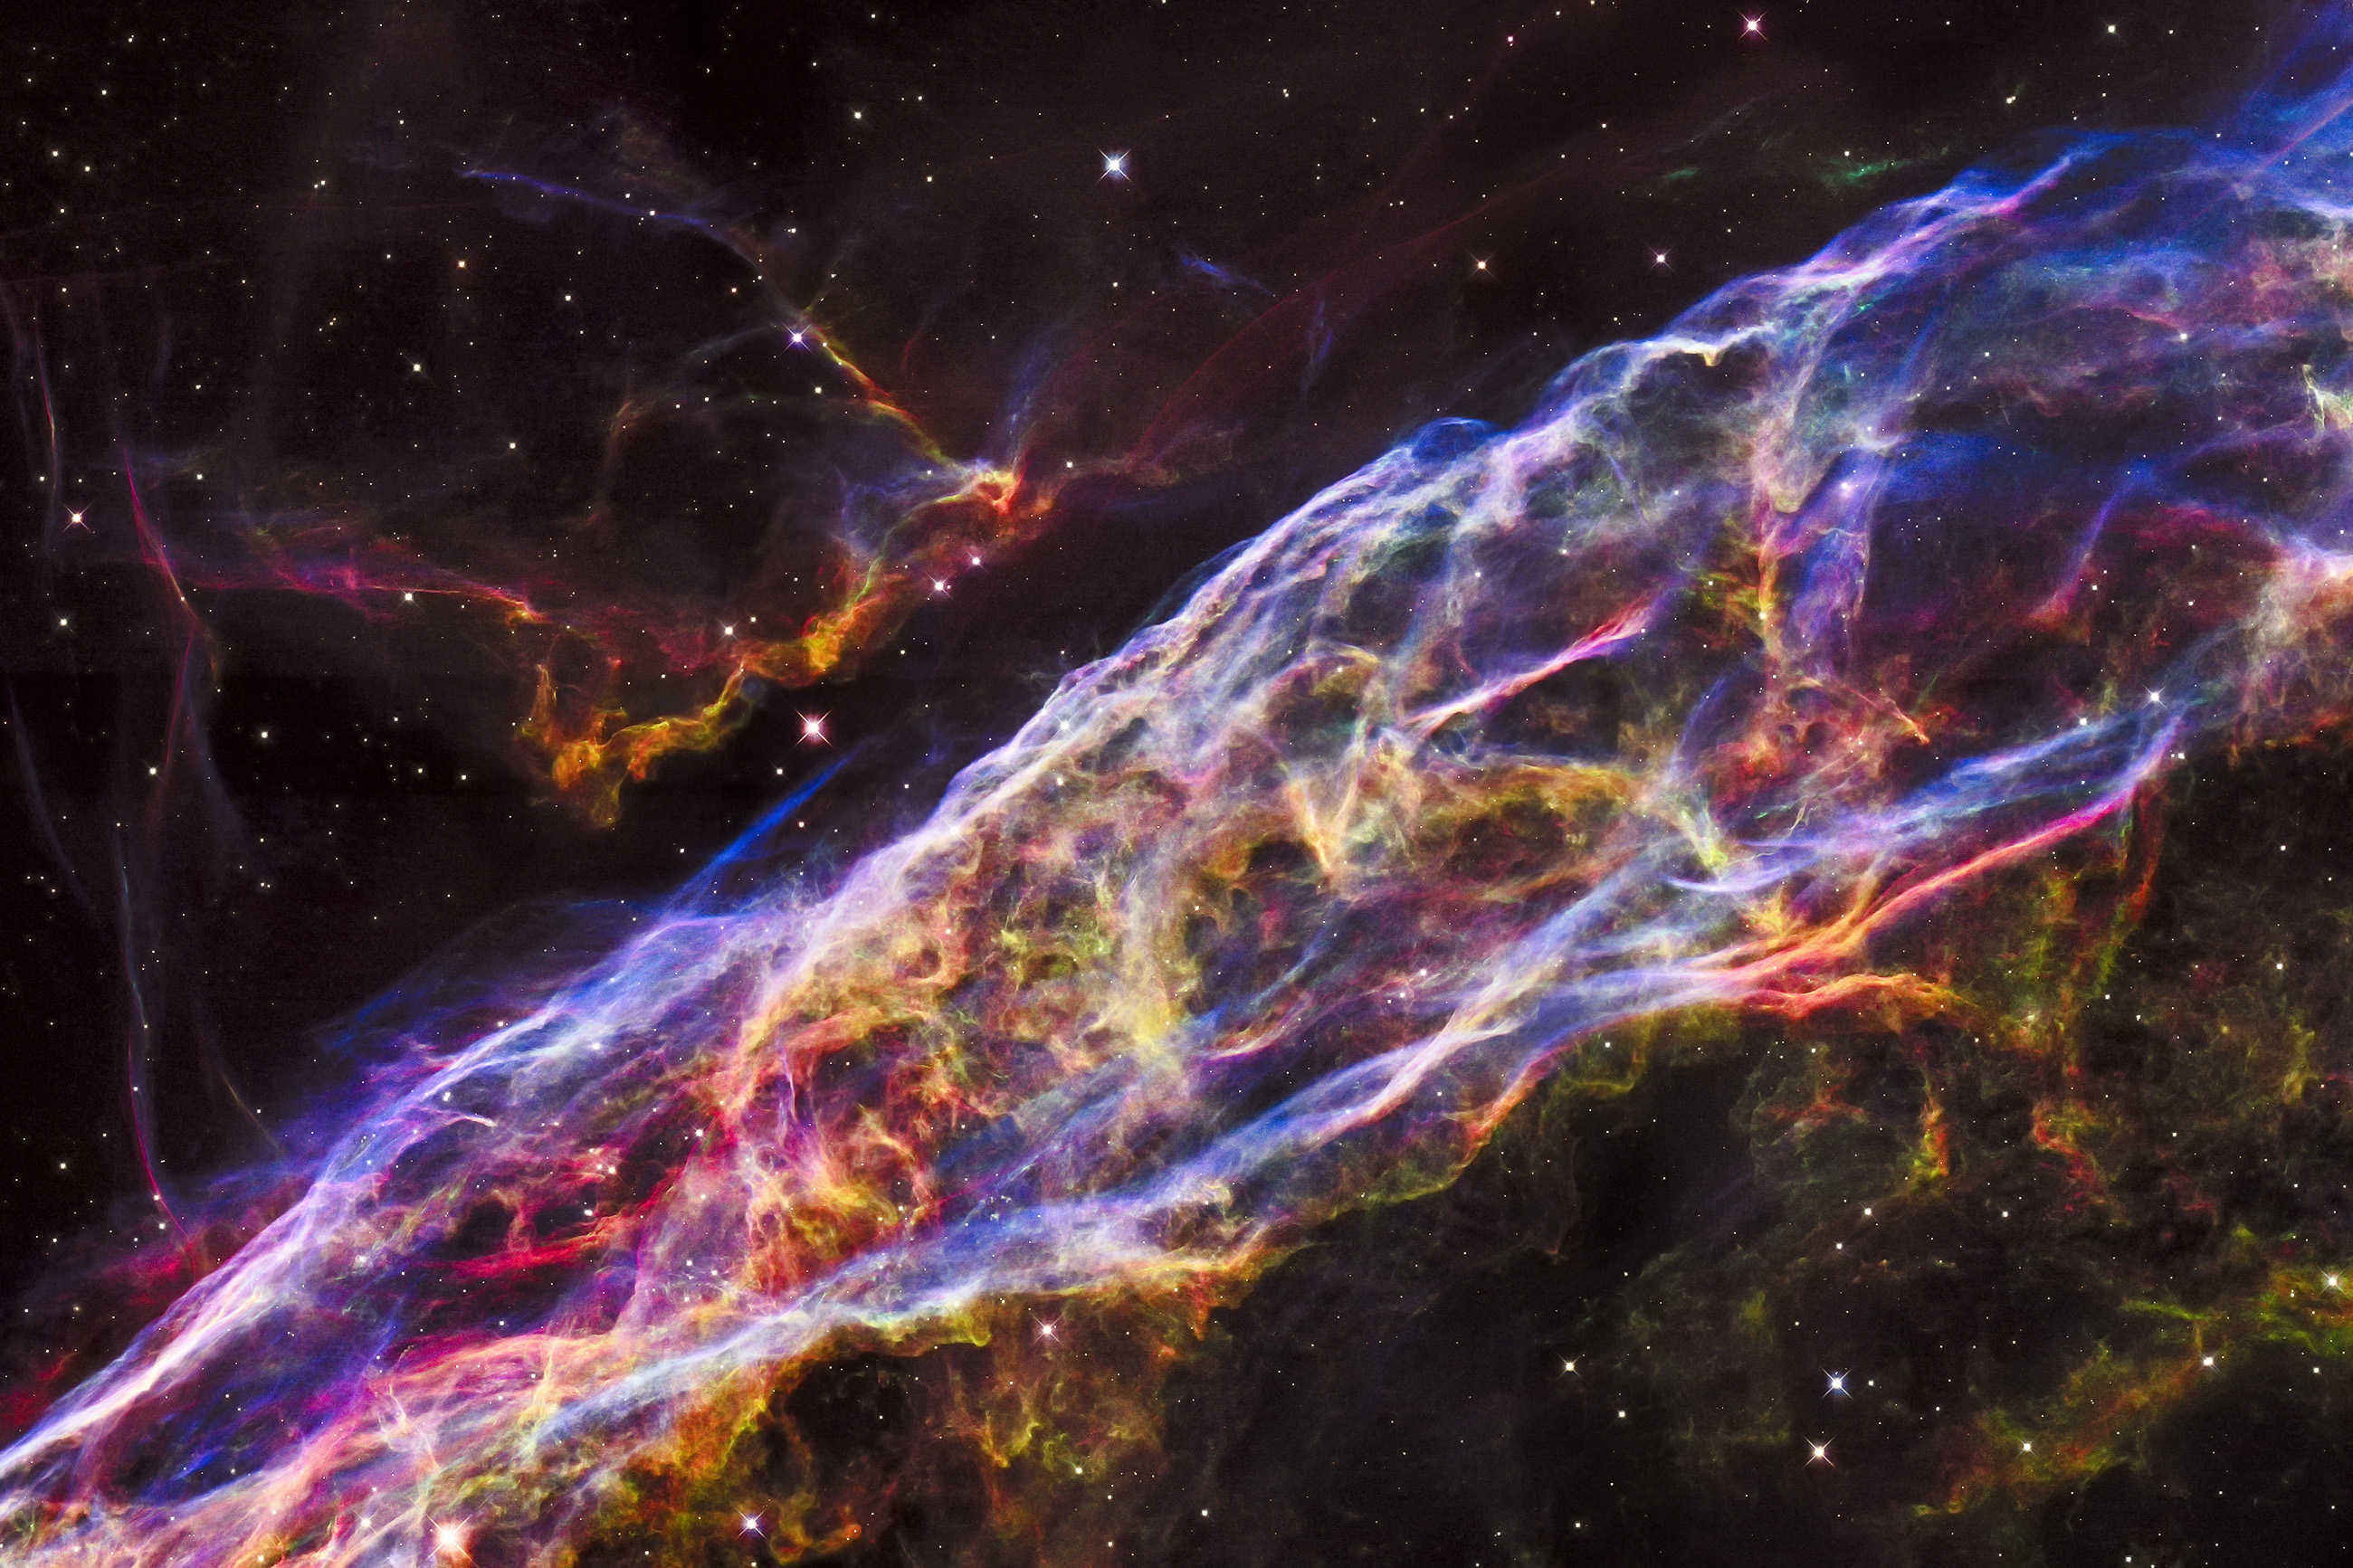 Credits: NASA/ESA/Hubble Heritage Team